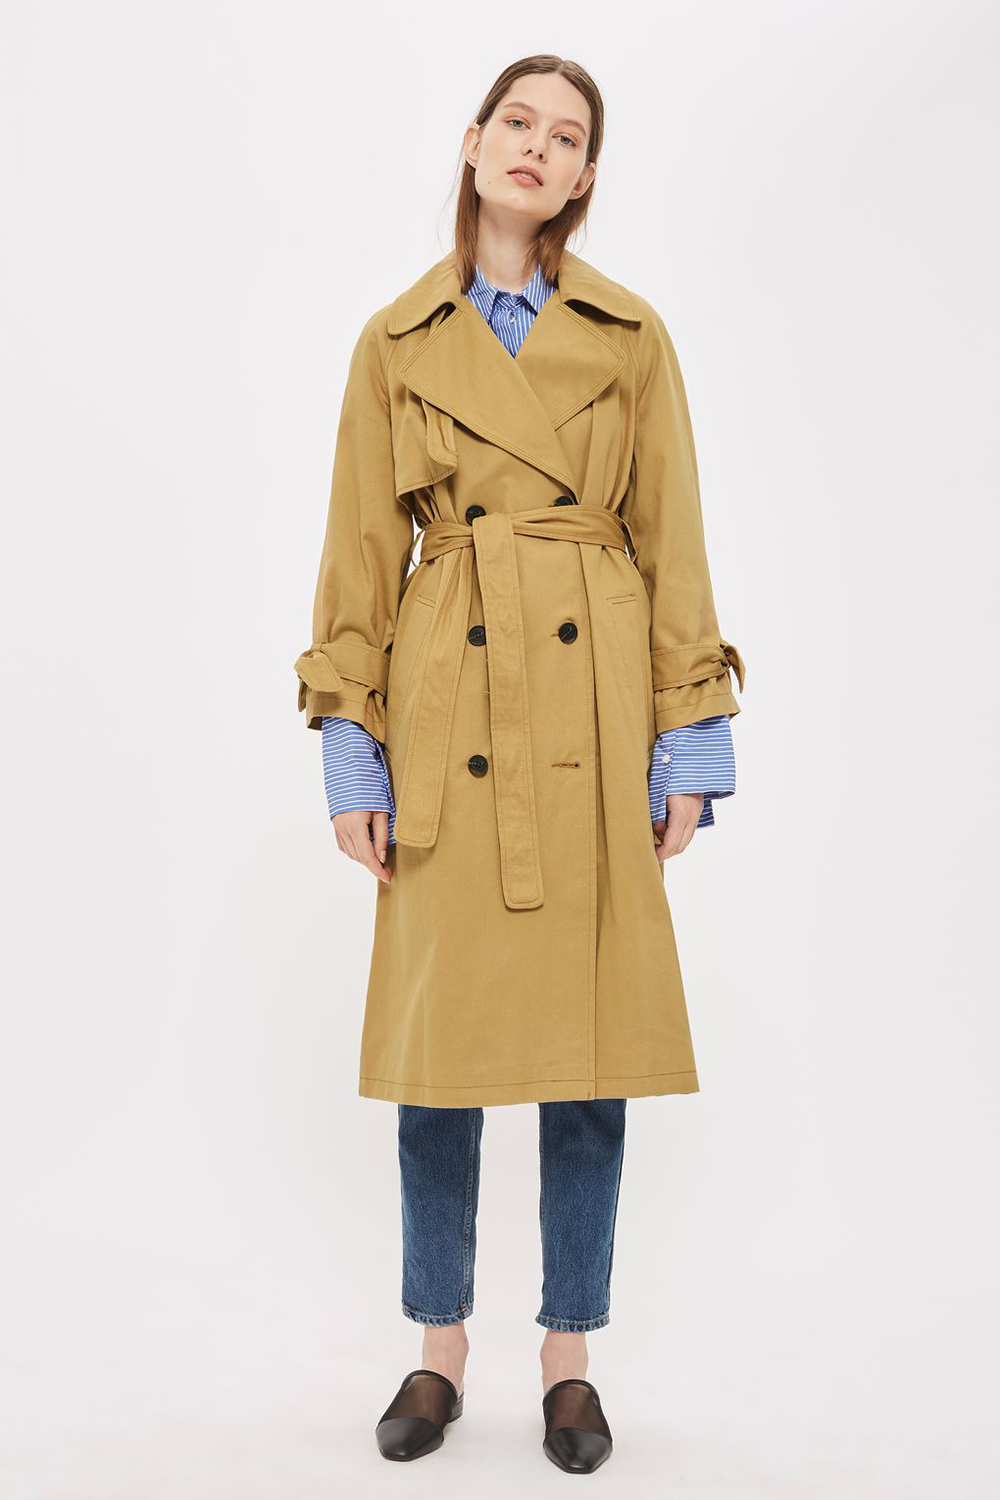 Topshop trench coat, $148